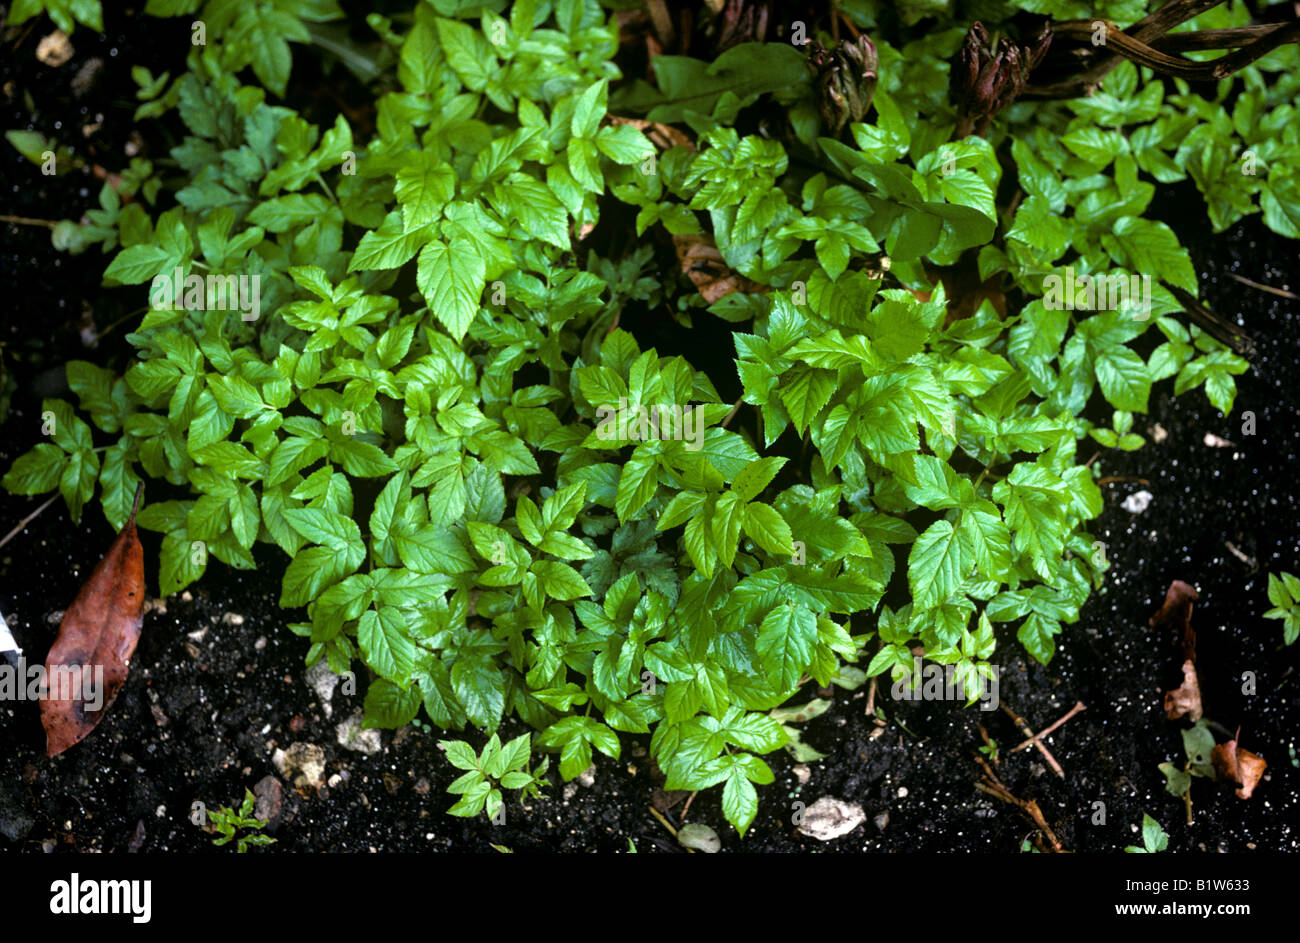 Ground elder Aegopodium podagraria invasive weed in a garden flowerbed Stock Photo